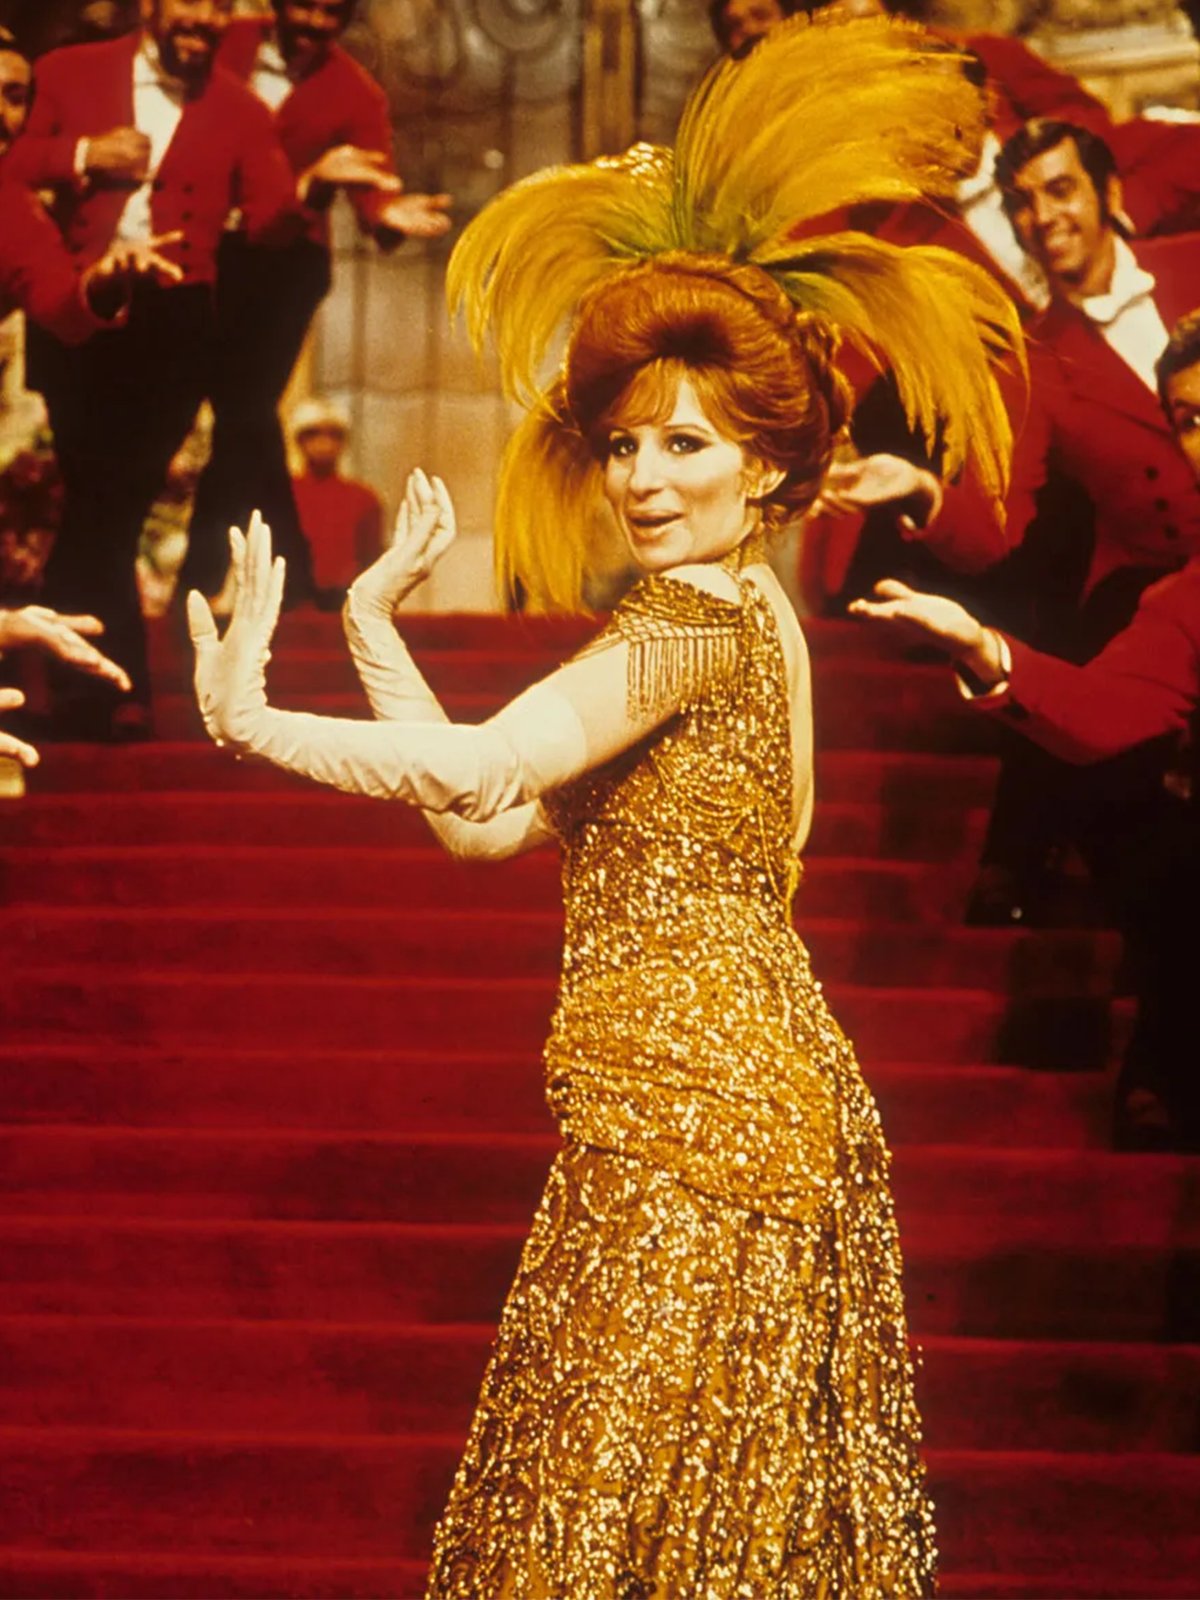 Abito o gioiello? Il prezioso vestito della Streisand in “Hello, Dolly!”